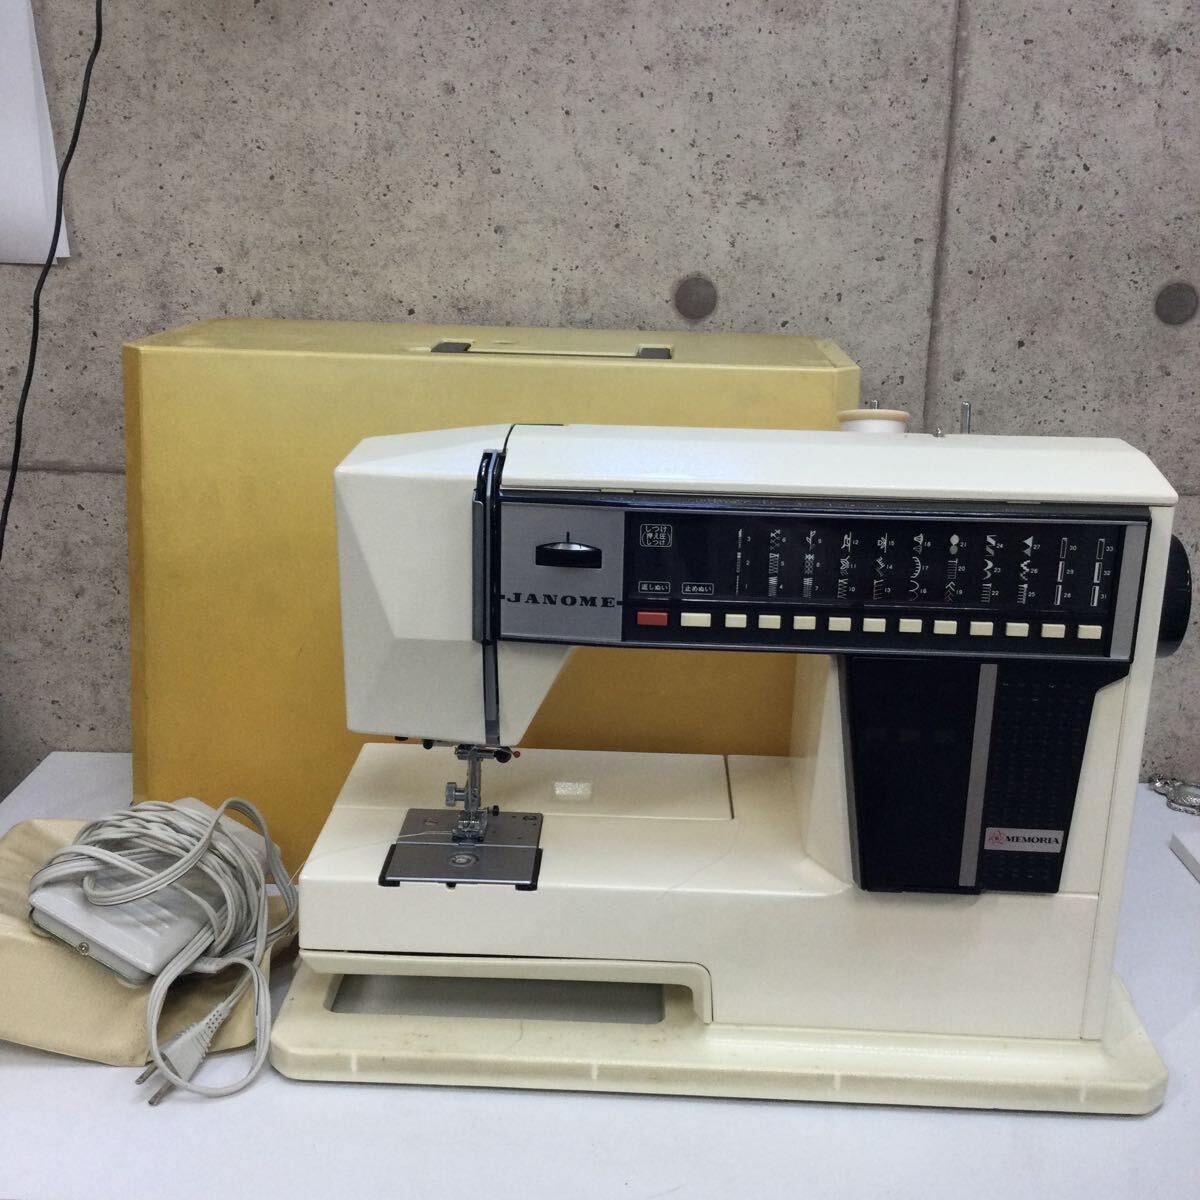 ◎【JANOME/ジャノメ】MODEL 5002 MEMORIA メモリア ミシン ジャノメミシン 1980年製 フットペダル コンピューターミシン 当時物 現状品の画像1